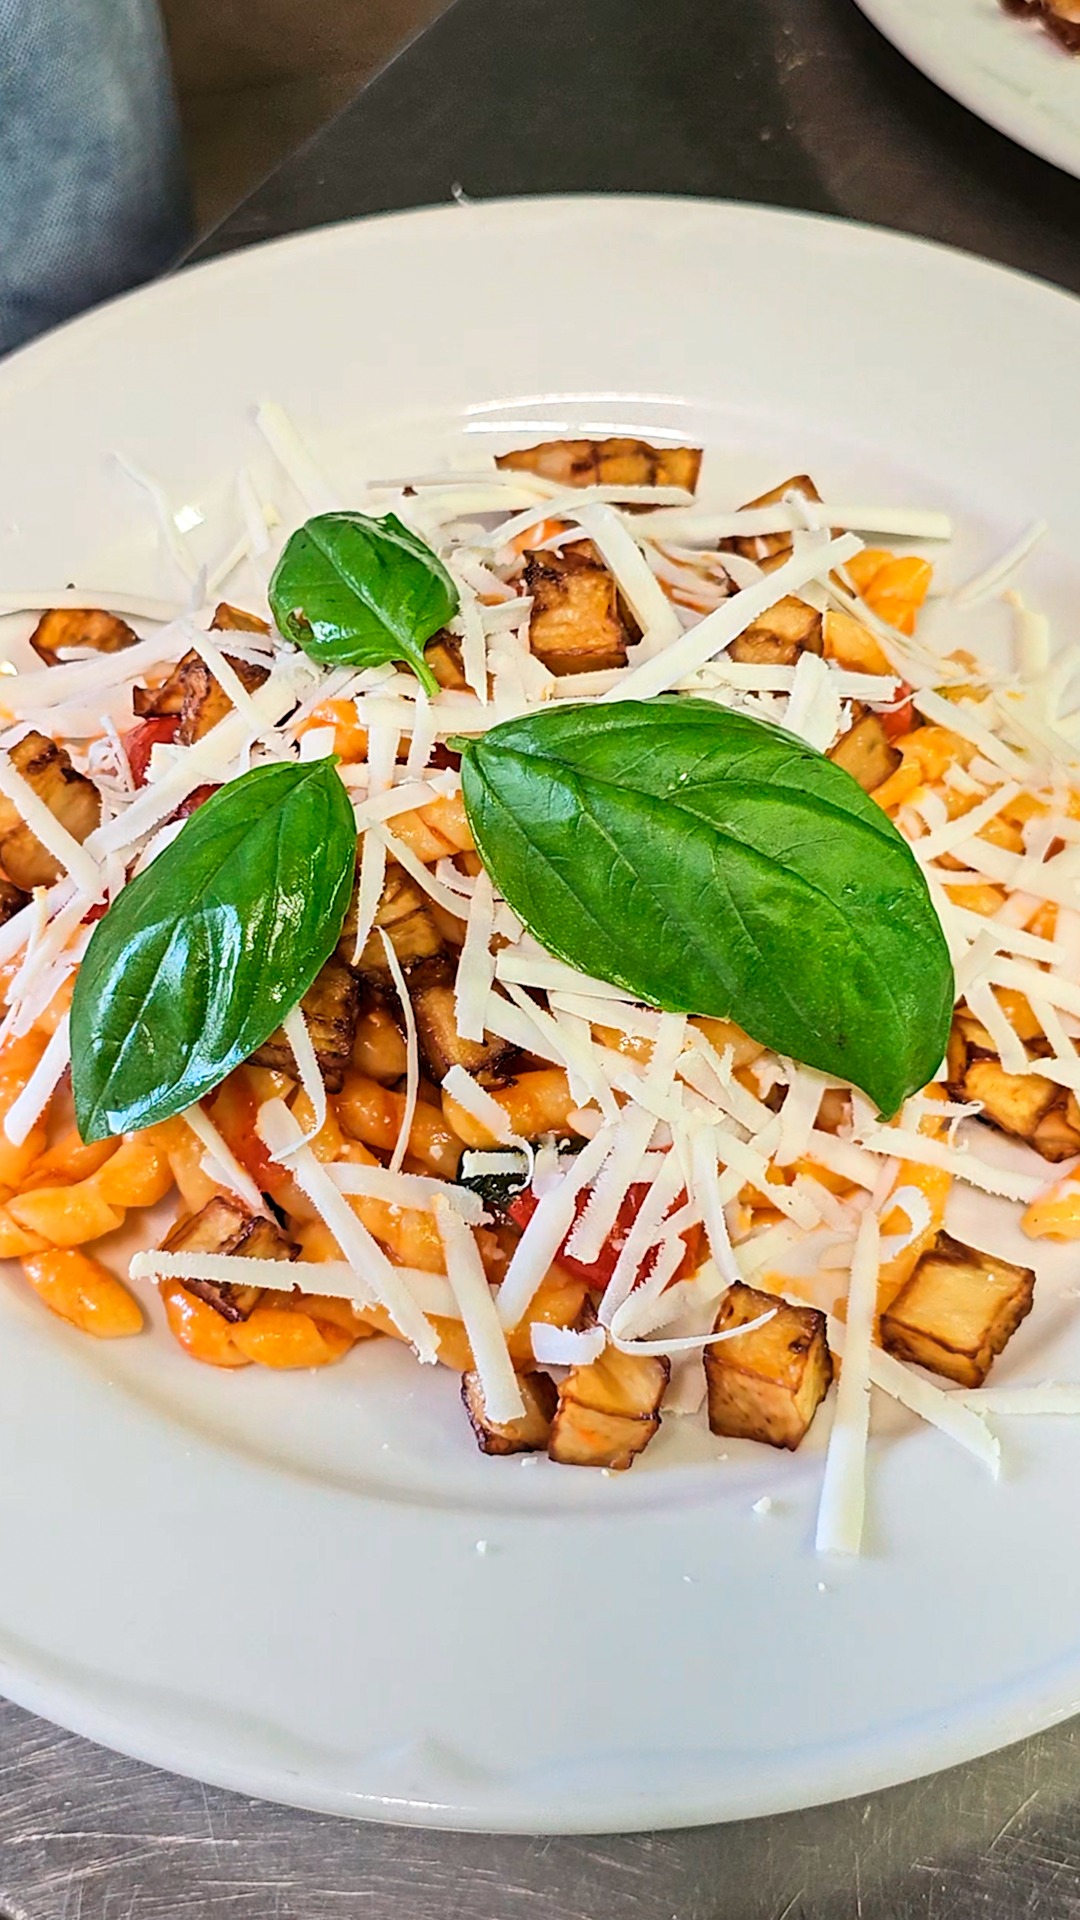 Pausa pranzo?🍝

Scegli i nostri deliziosi primi piatti dai sapori siciliani.😋

📍